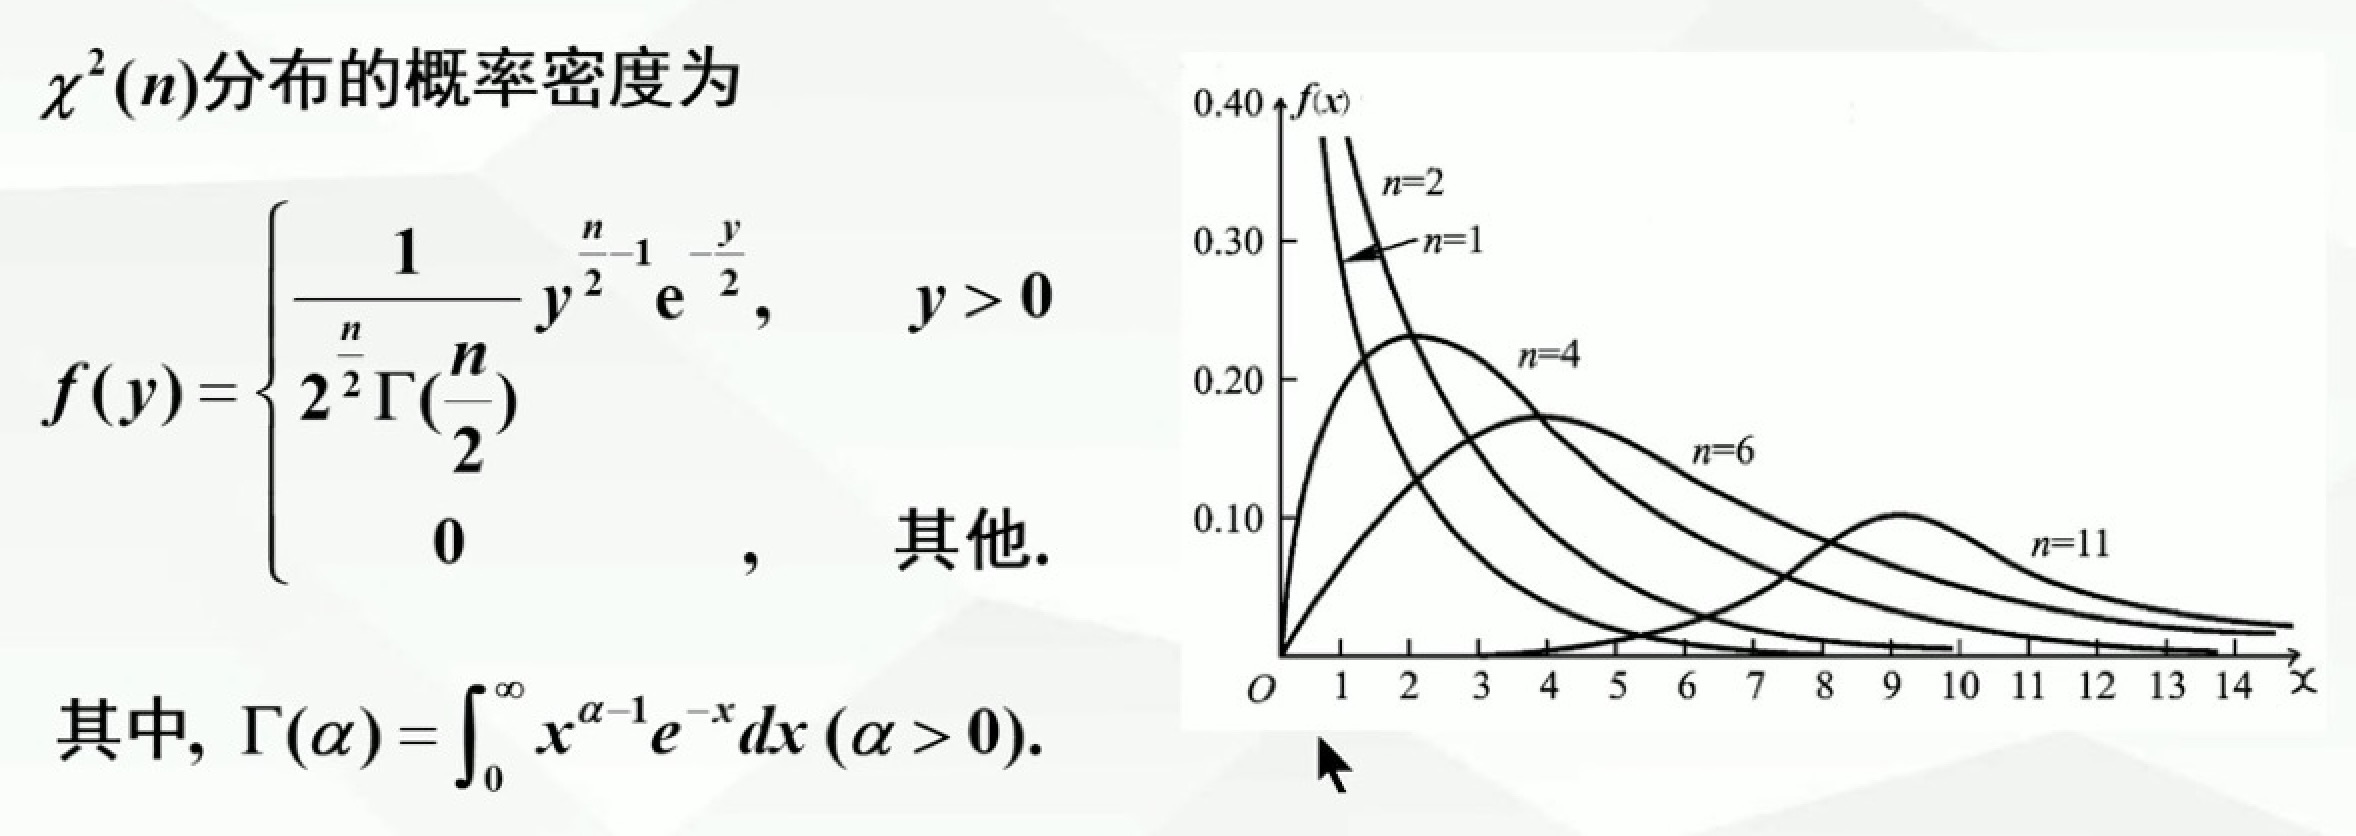 p27-X²分布概率密度